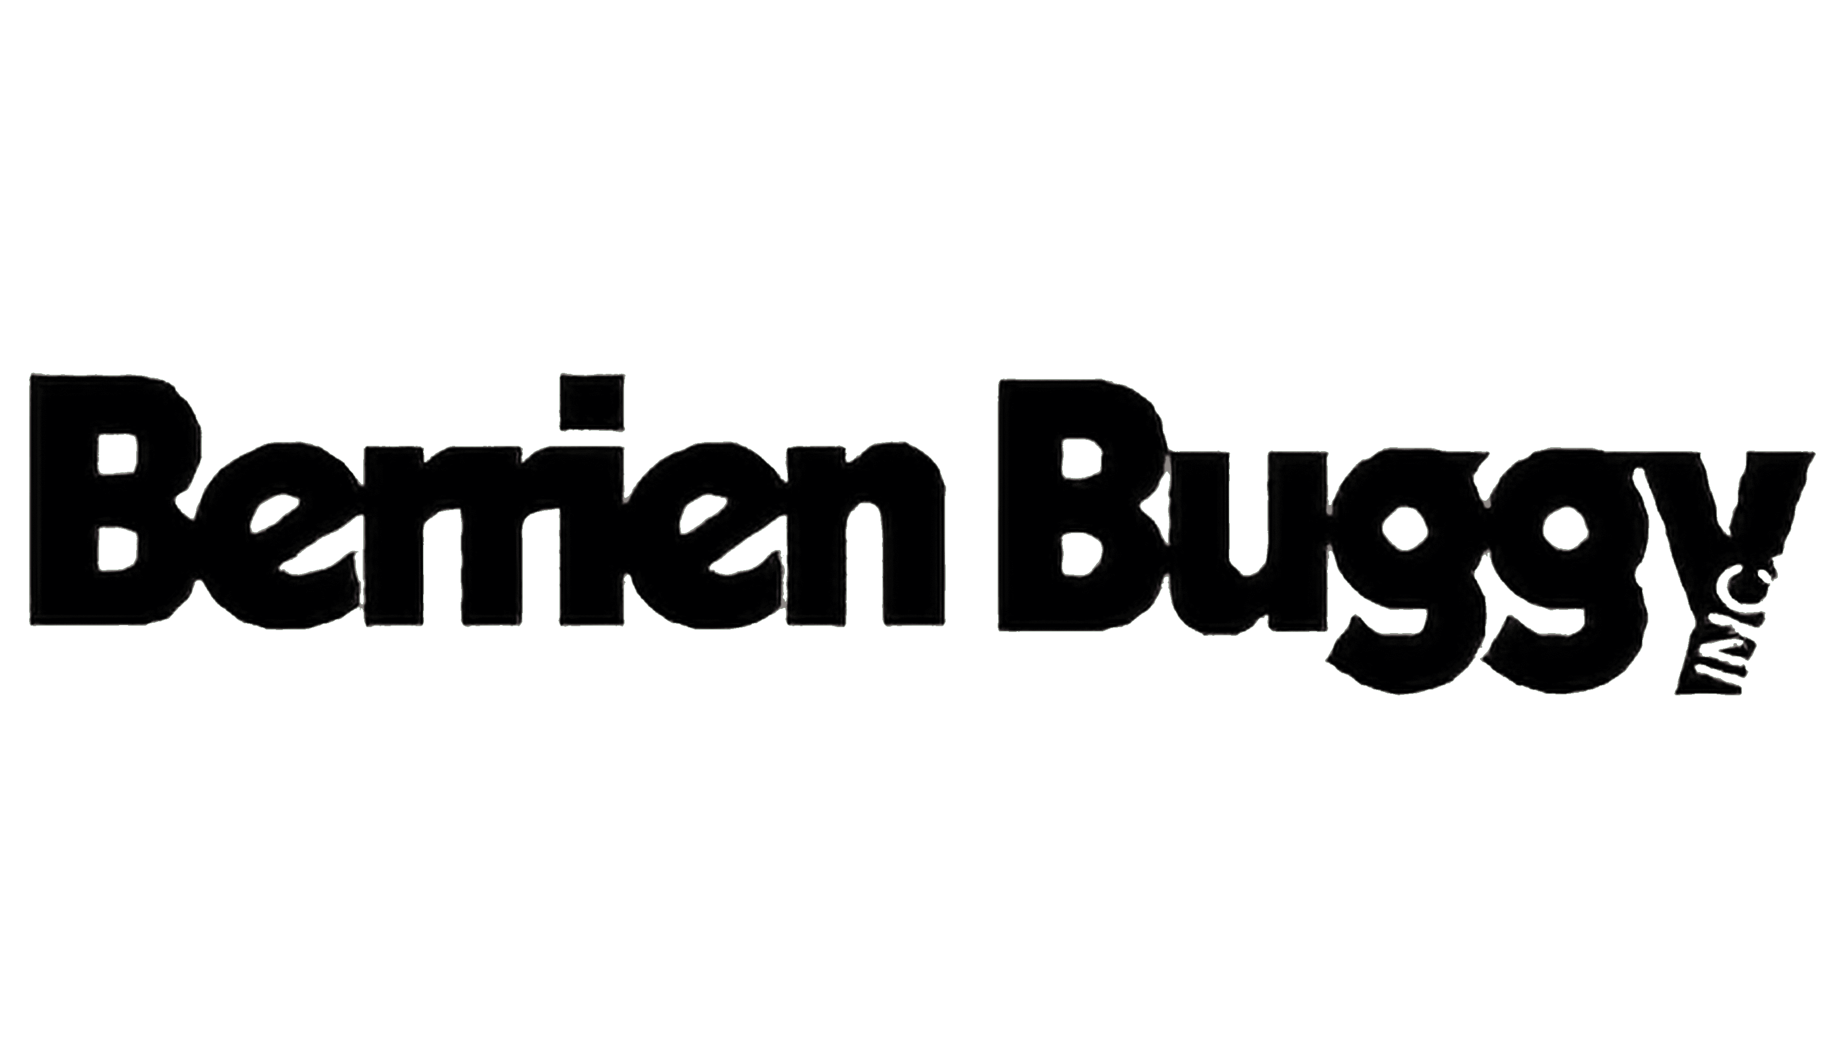 Berrien buggy inc sign